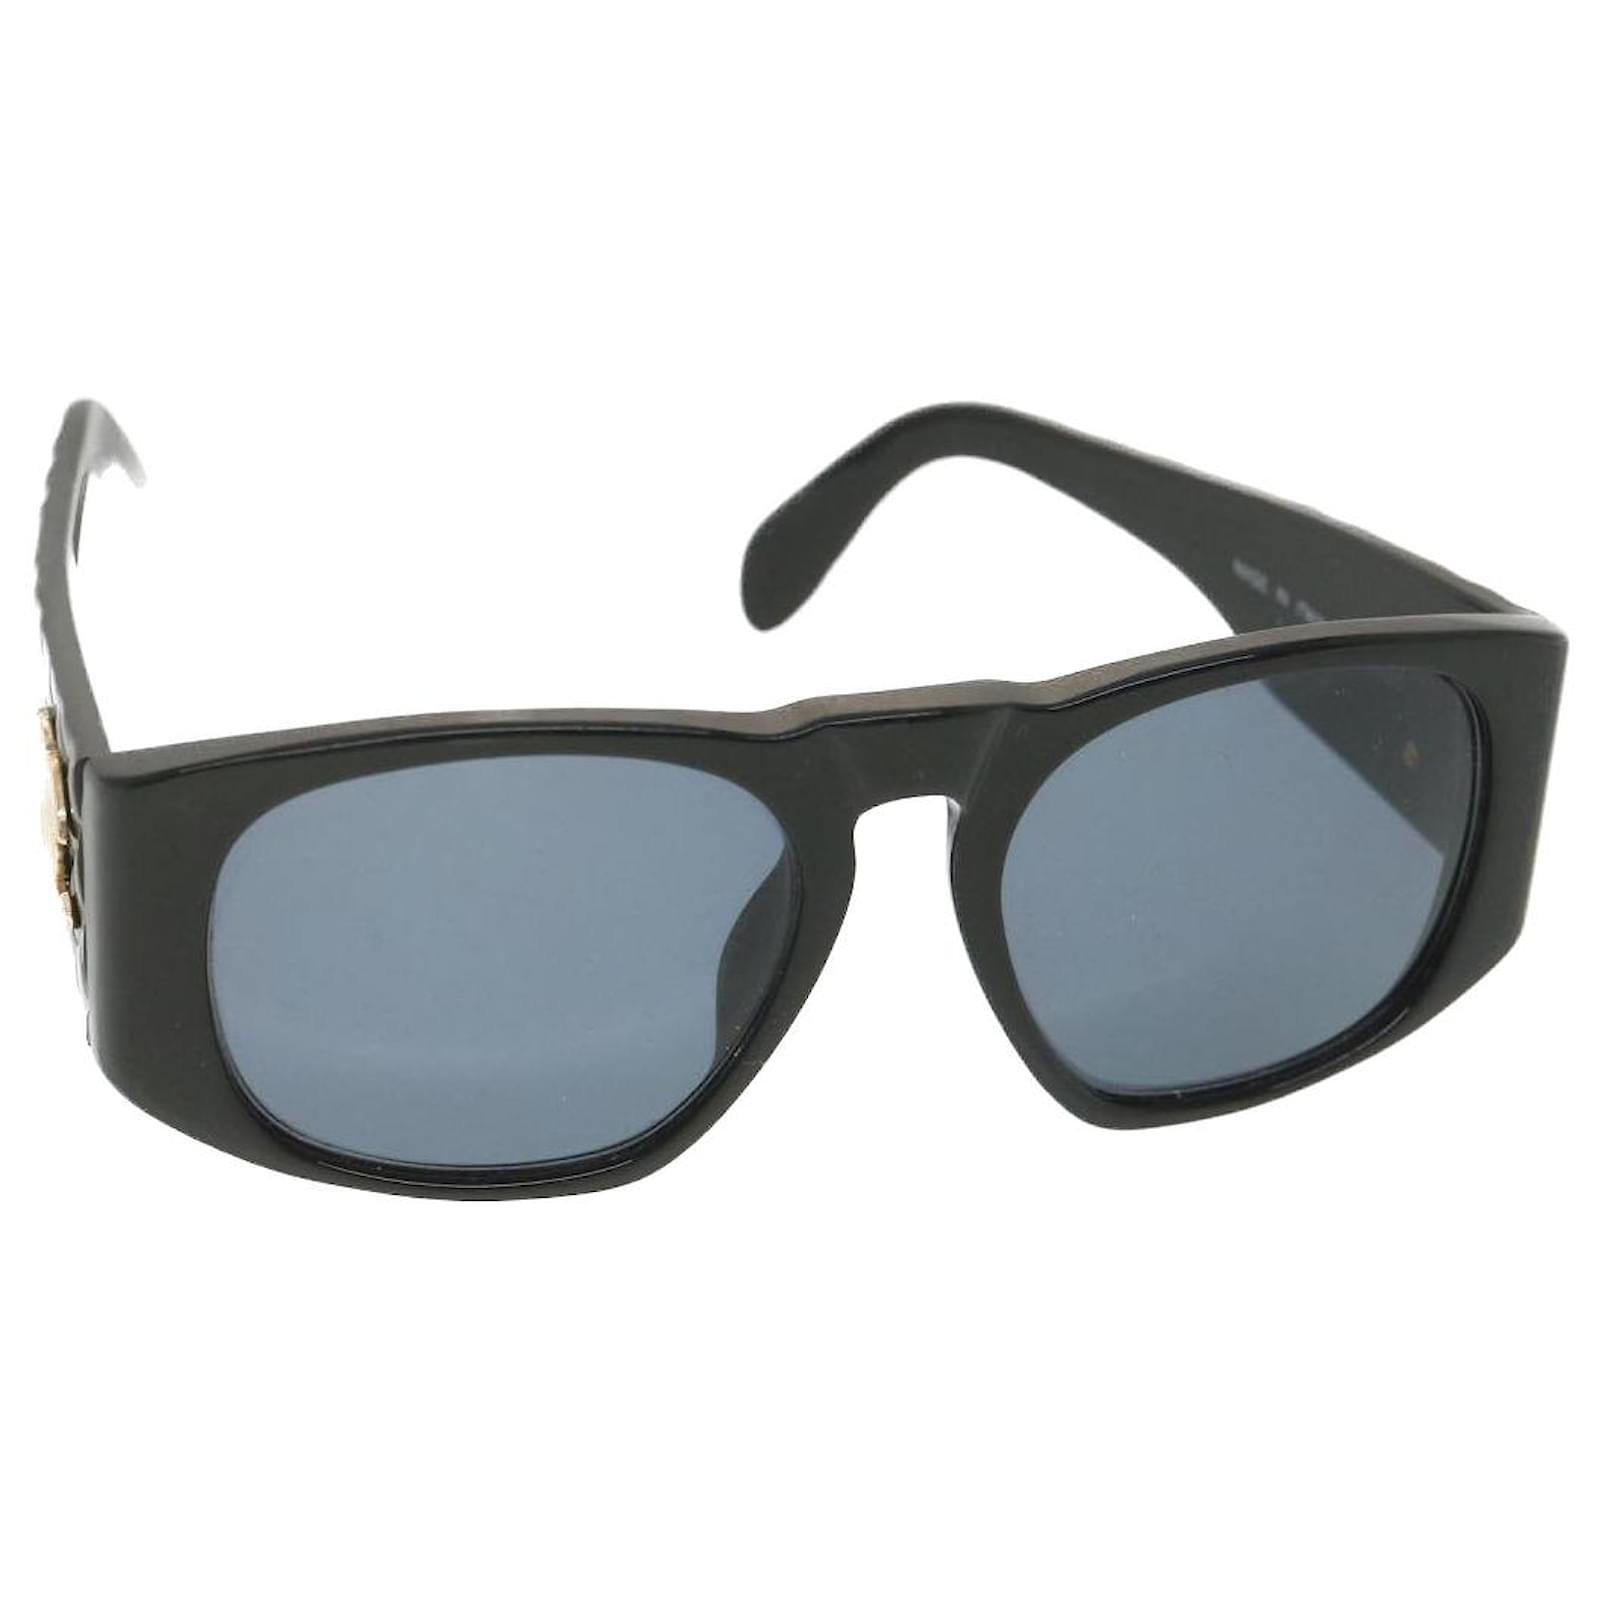 CHANEL Sunglasses black & gold